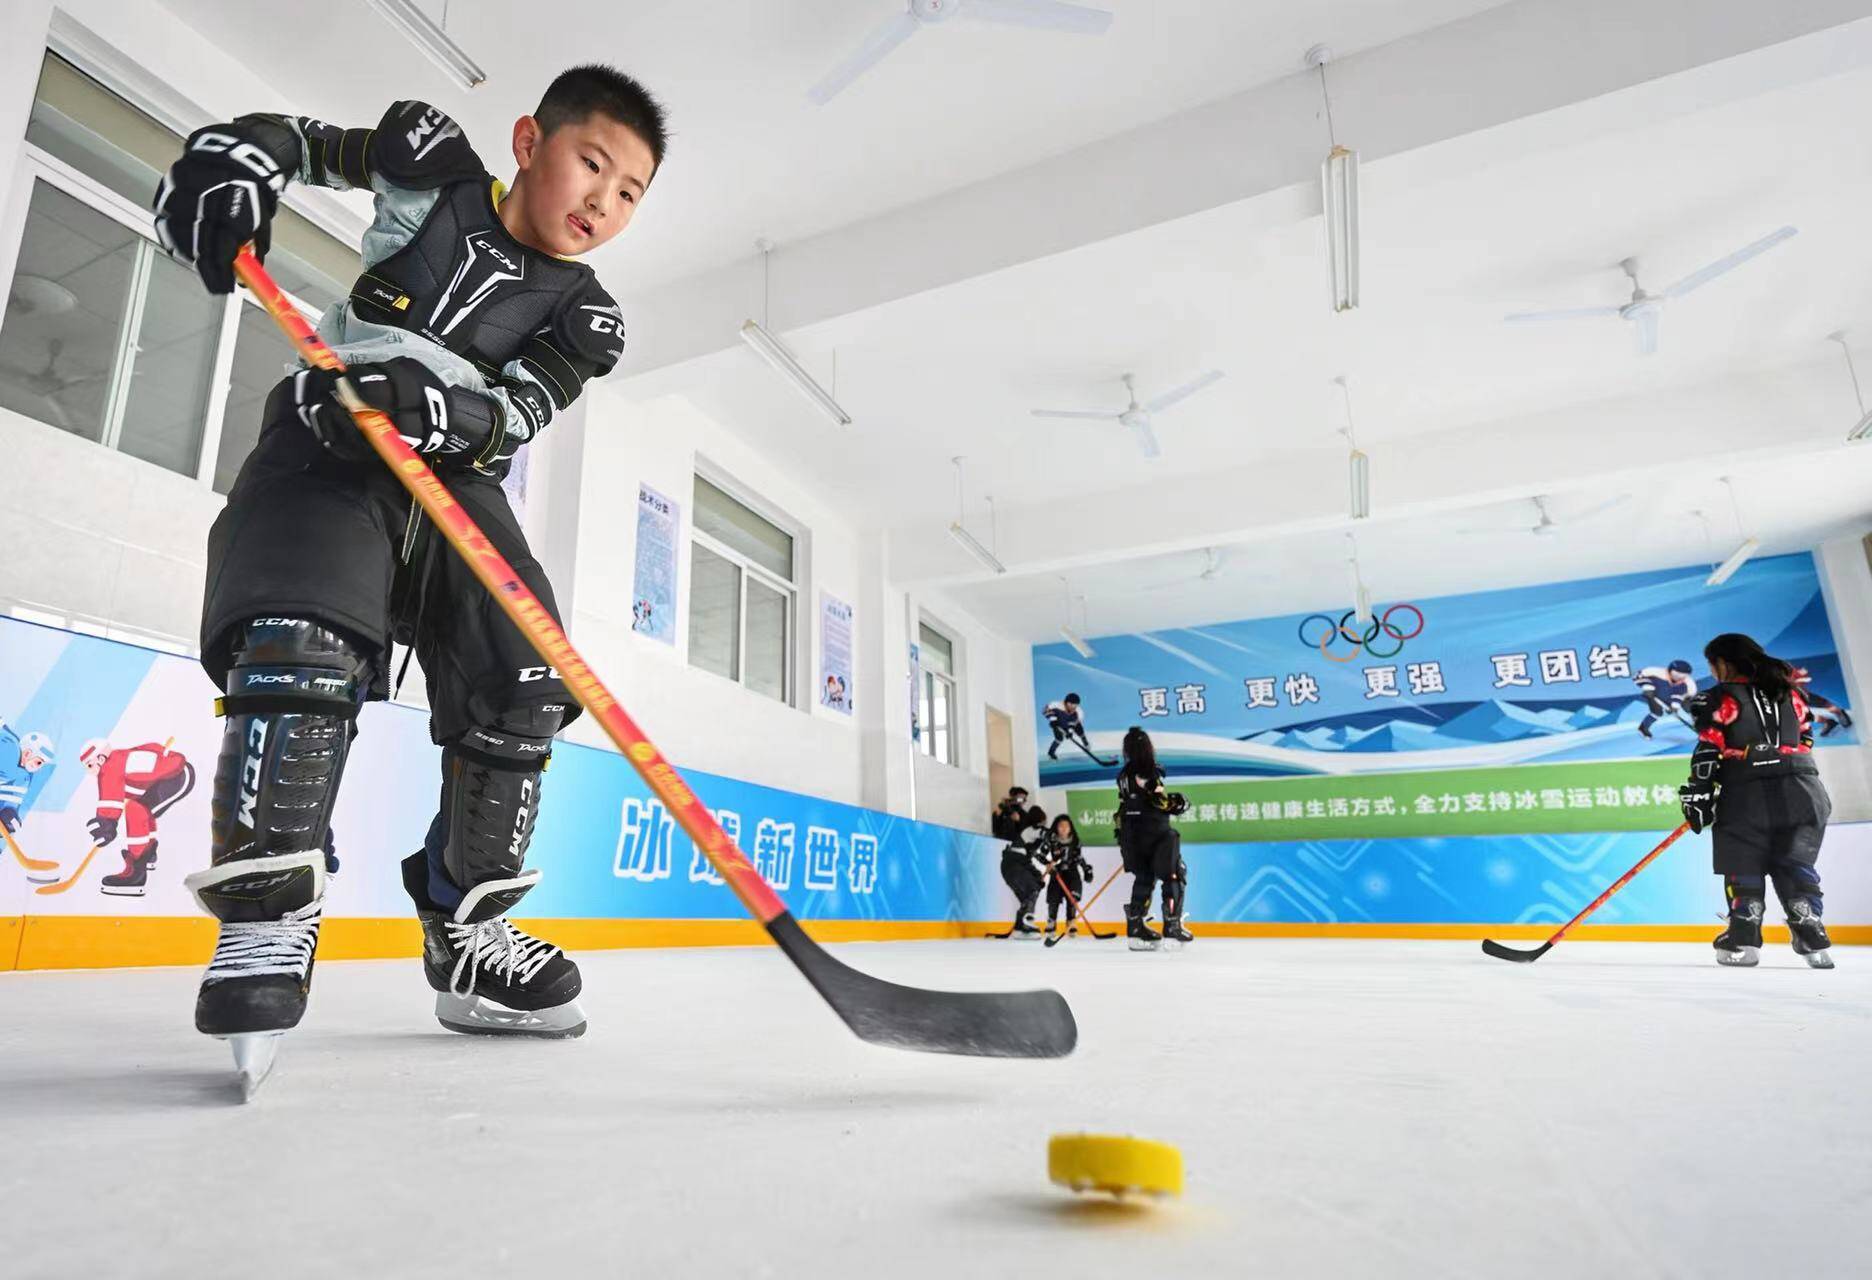 冰雪运动进校园 济南市首个校园冰球场正式启用